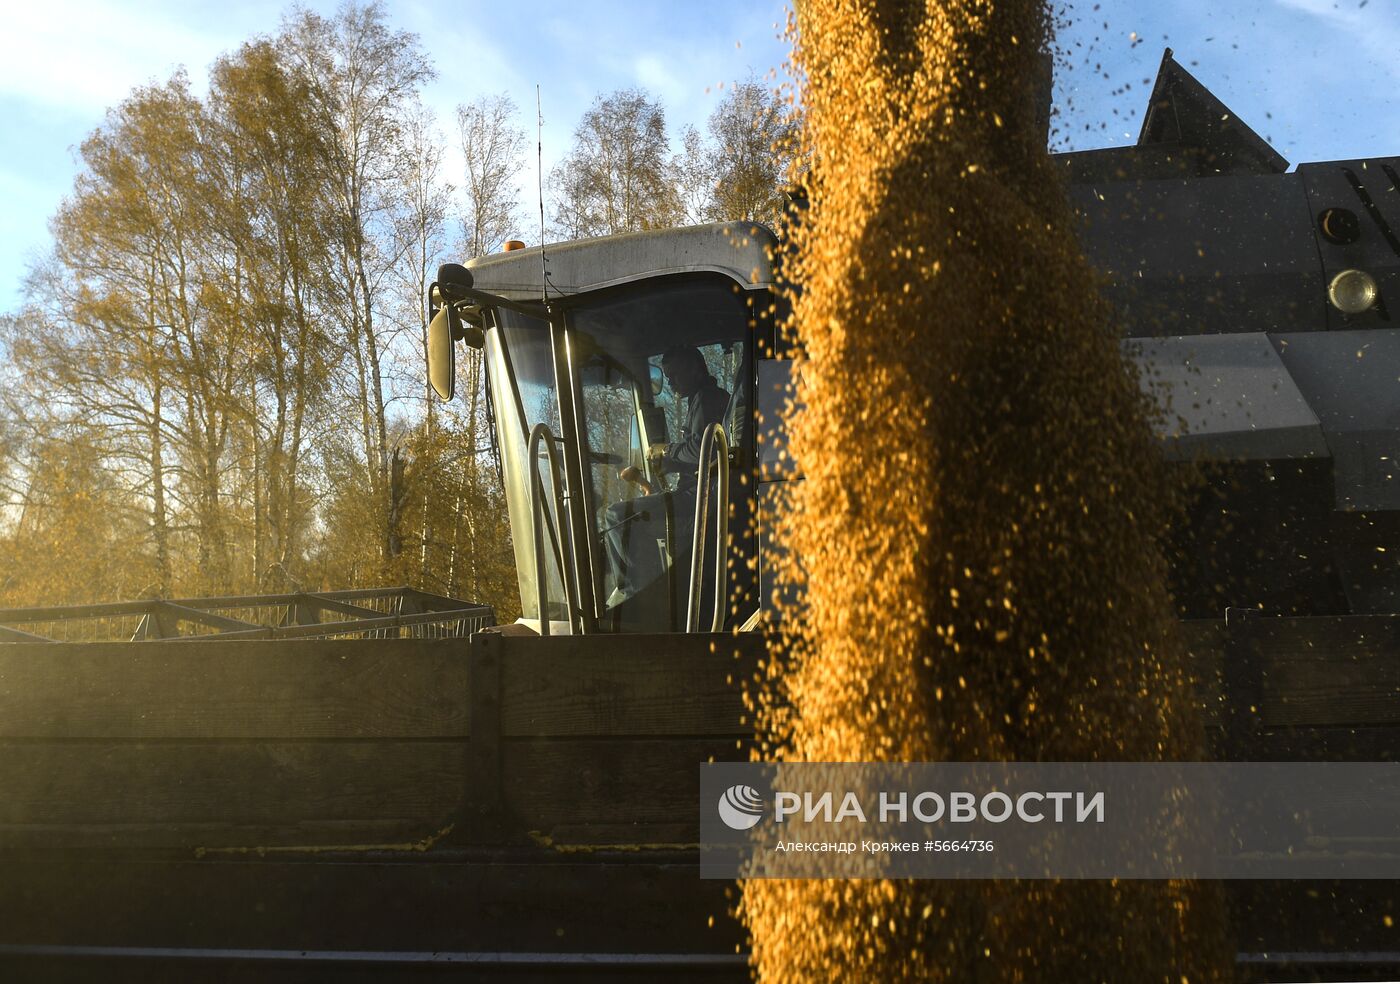 Уборка зерновых в Новосибирской области